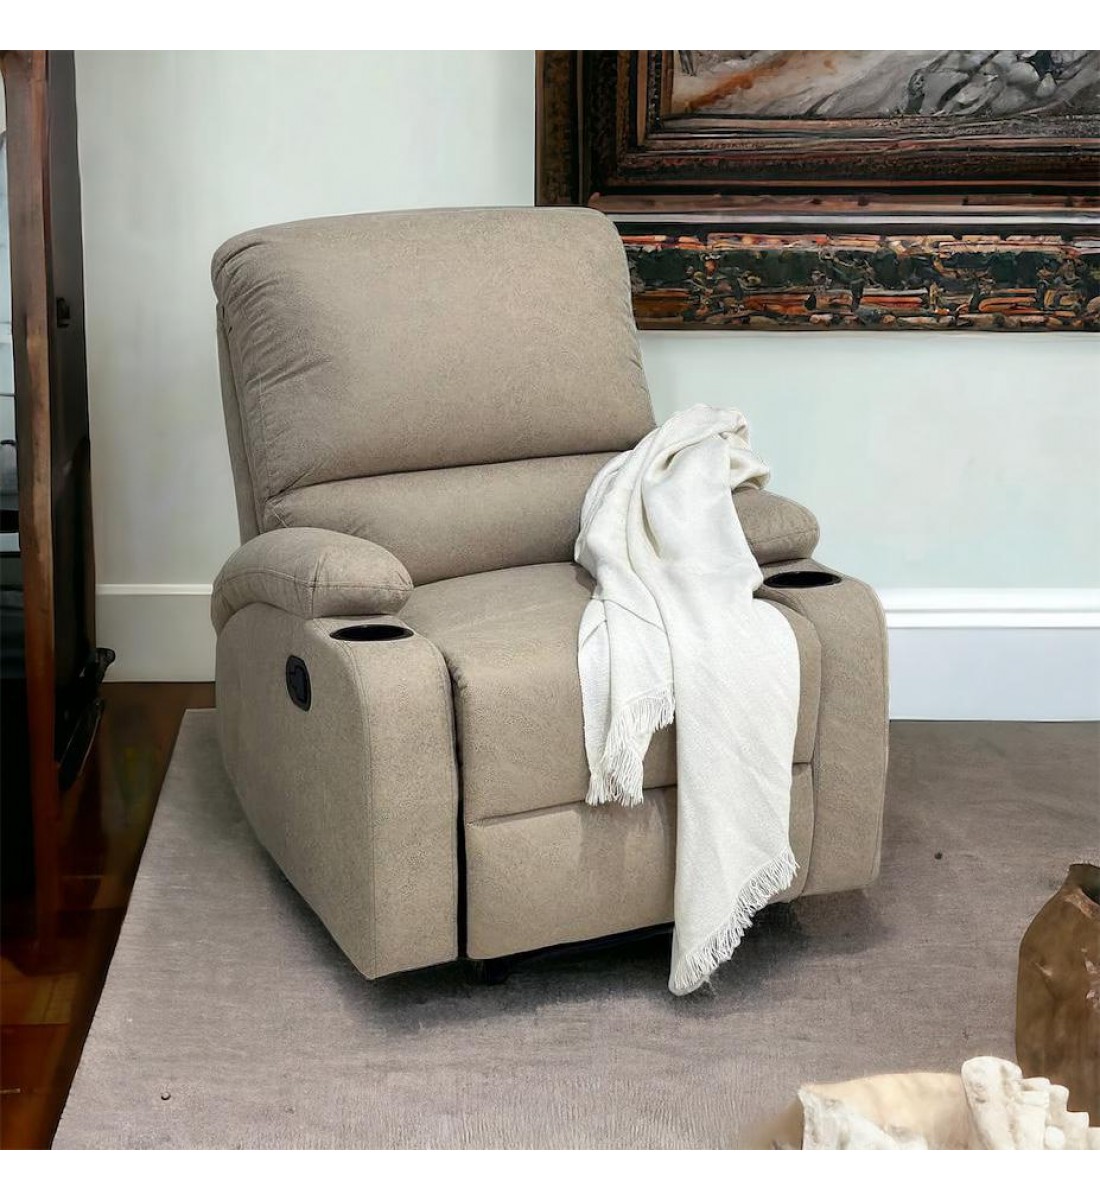 كرسي استرخاء ثابت مع حامل أكواب بيج76×52×48سم